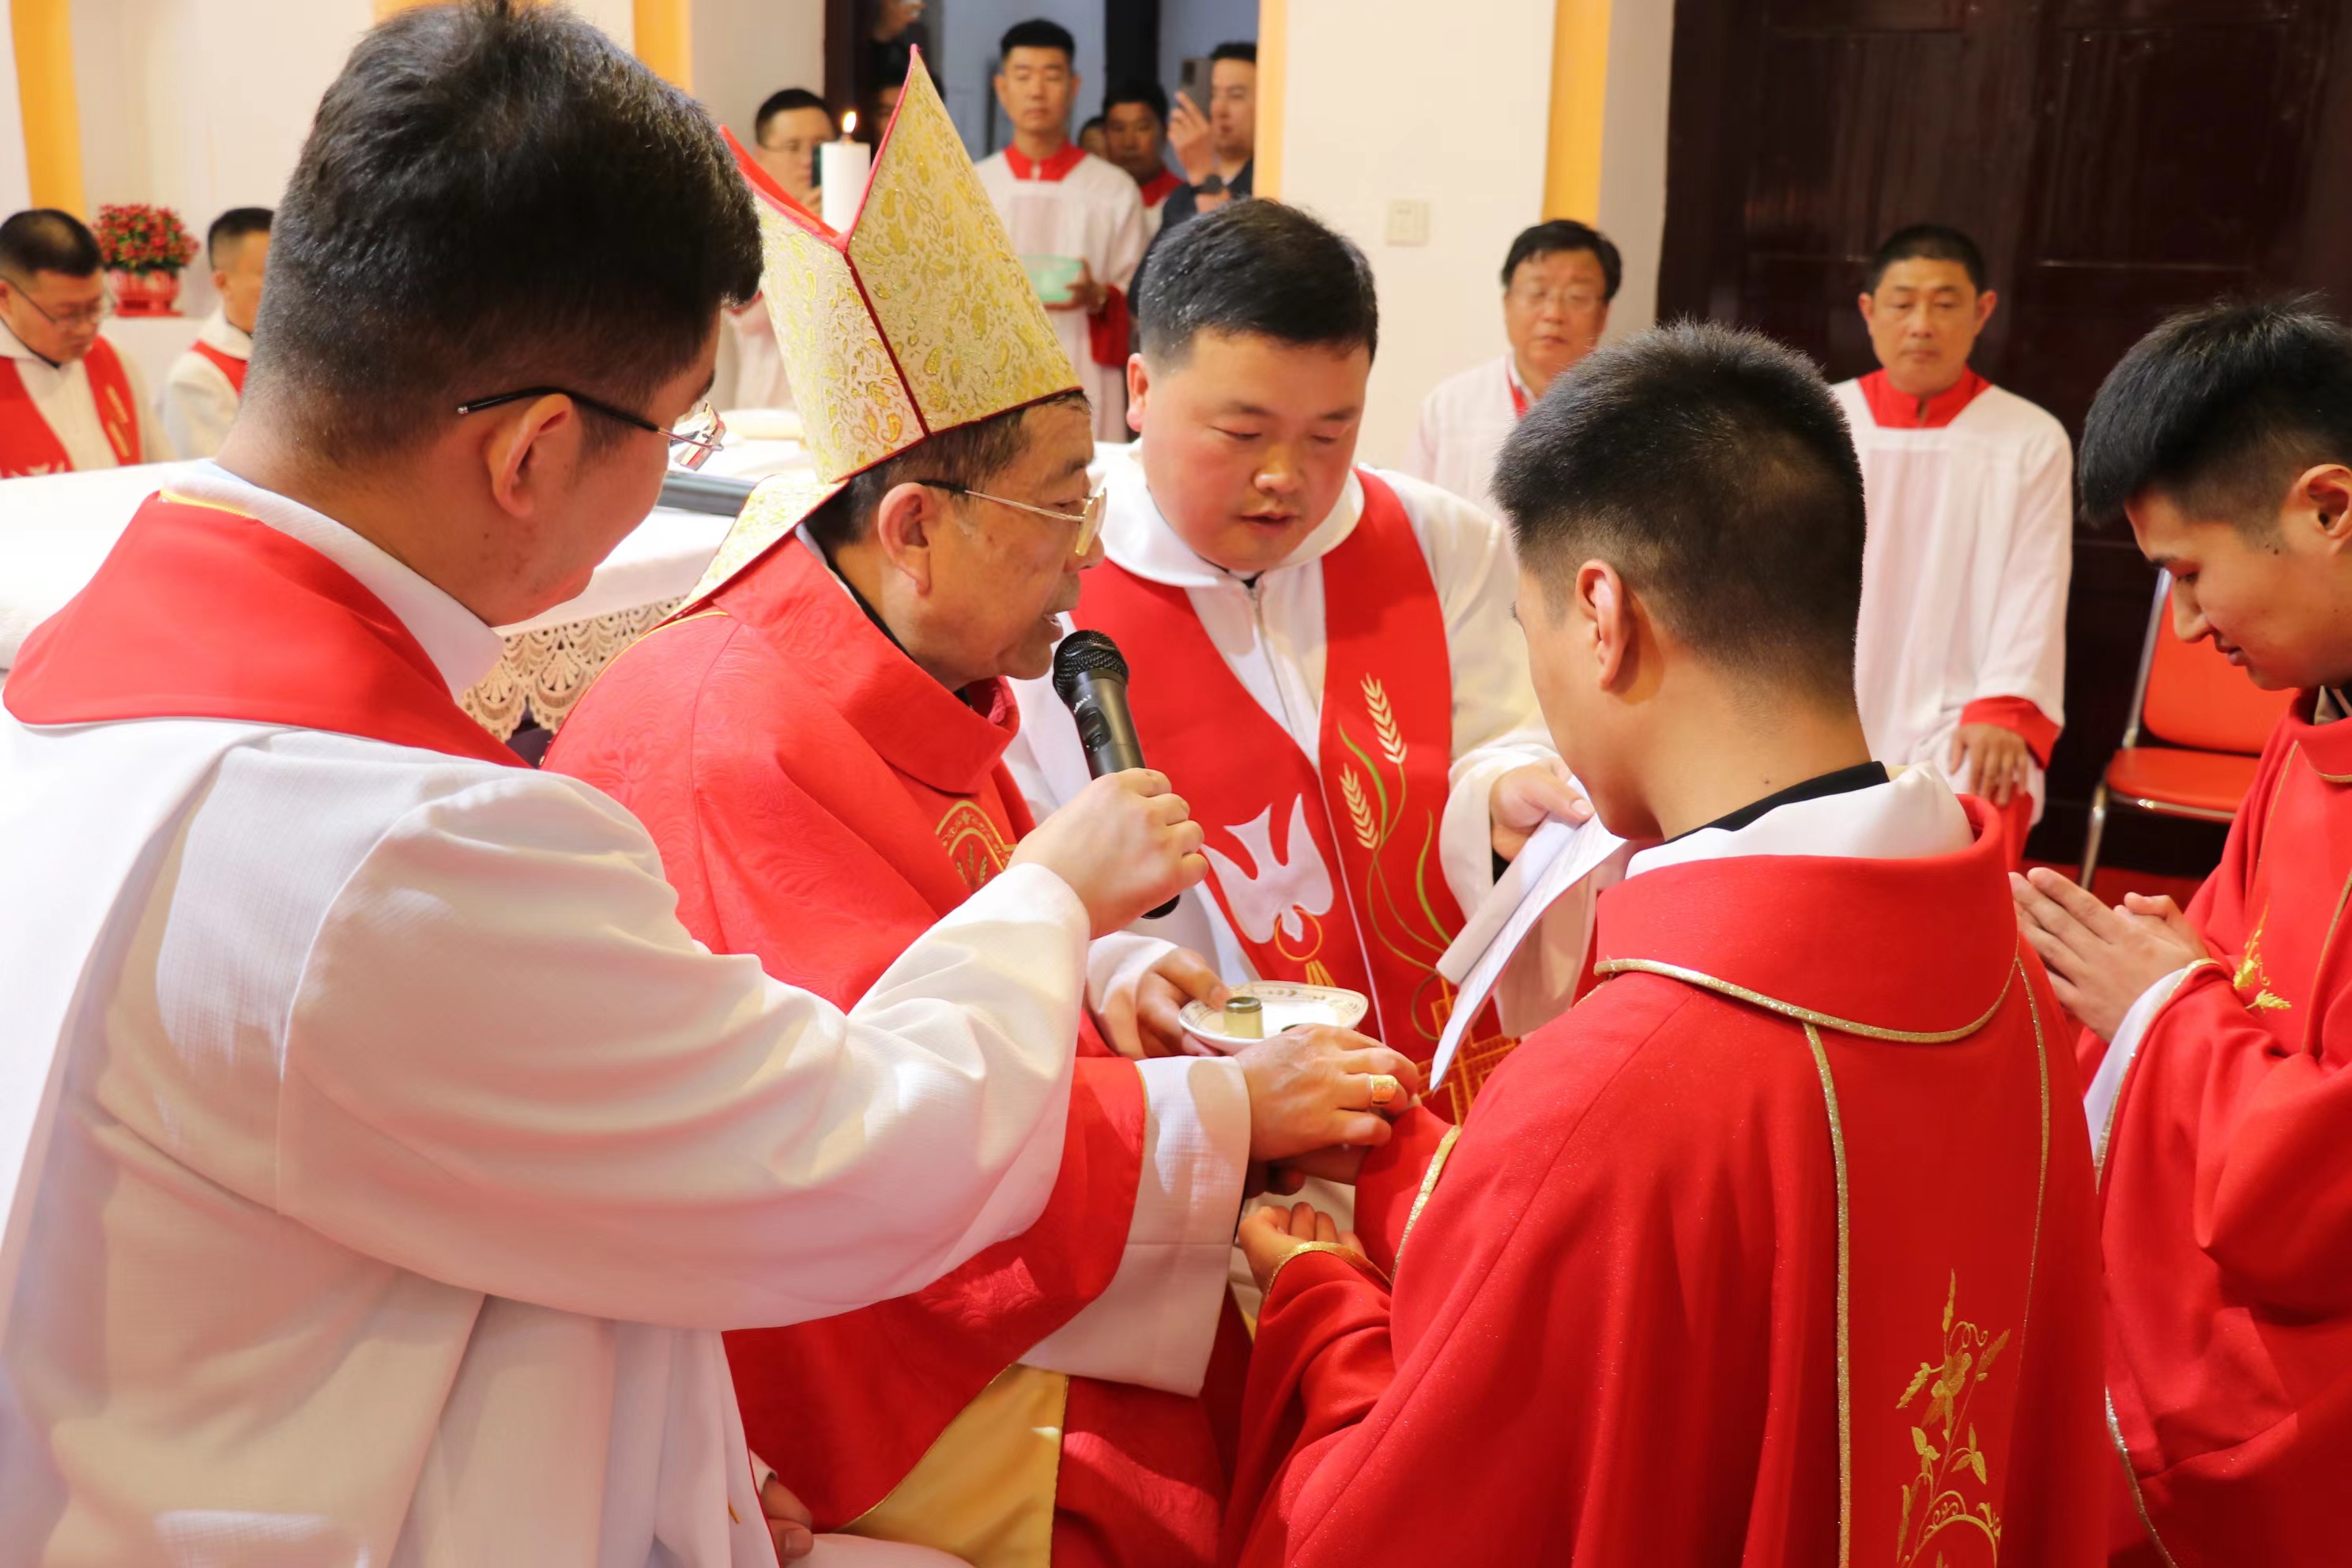 山东省临沂教区喜添两位新神父 - 中国天主教